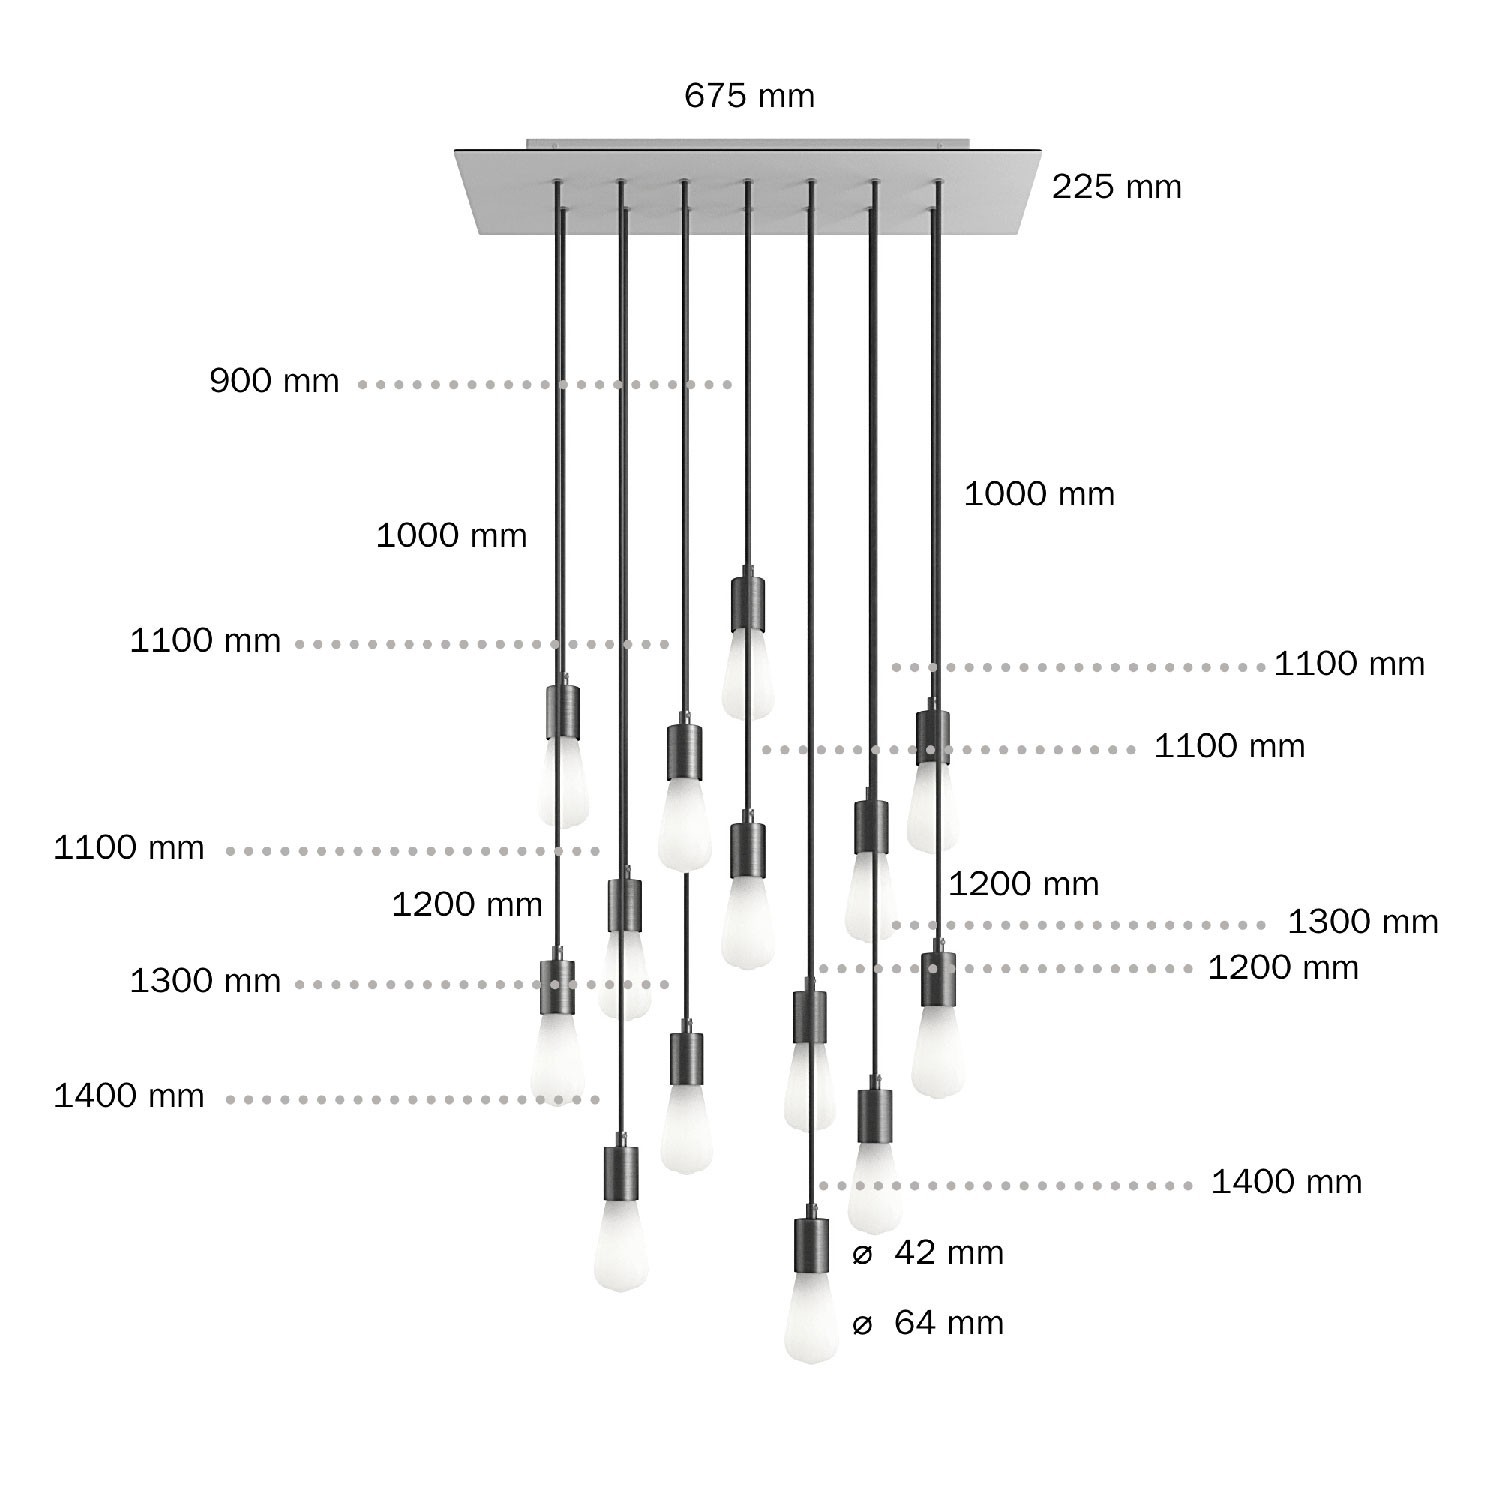 Viseća svjetiljka s 14 ispusta, pravokutnom XXL Rose-One rozetom 675 mm, tekstilnim kabelom, komponente u bojama metala.